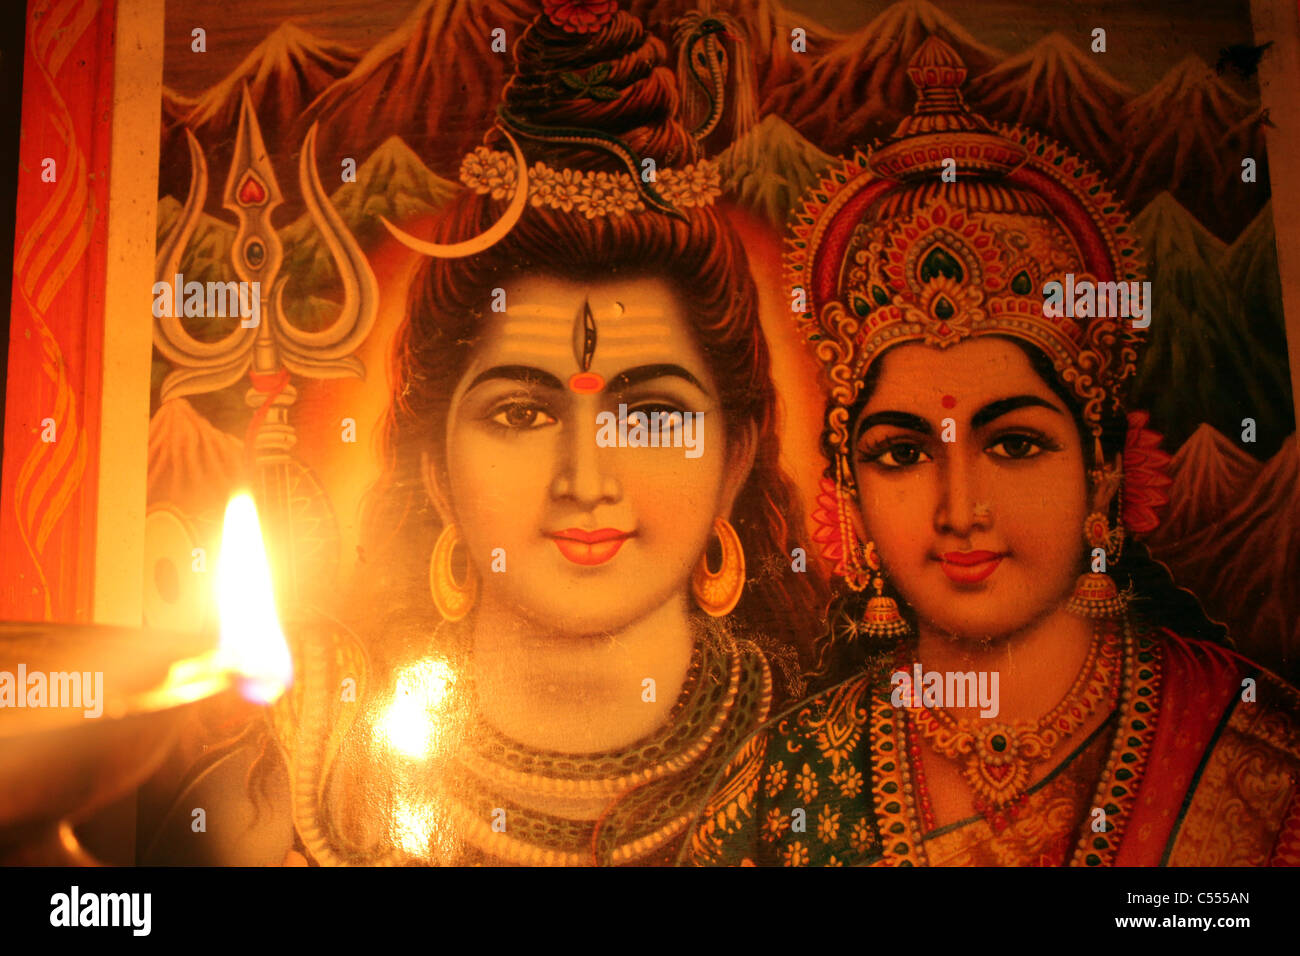 Hindu god Shiva and goddess Parvathi Stock Photo - Alamy